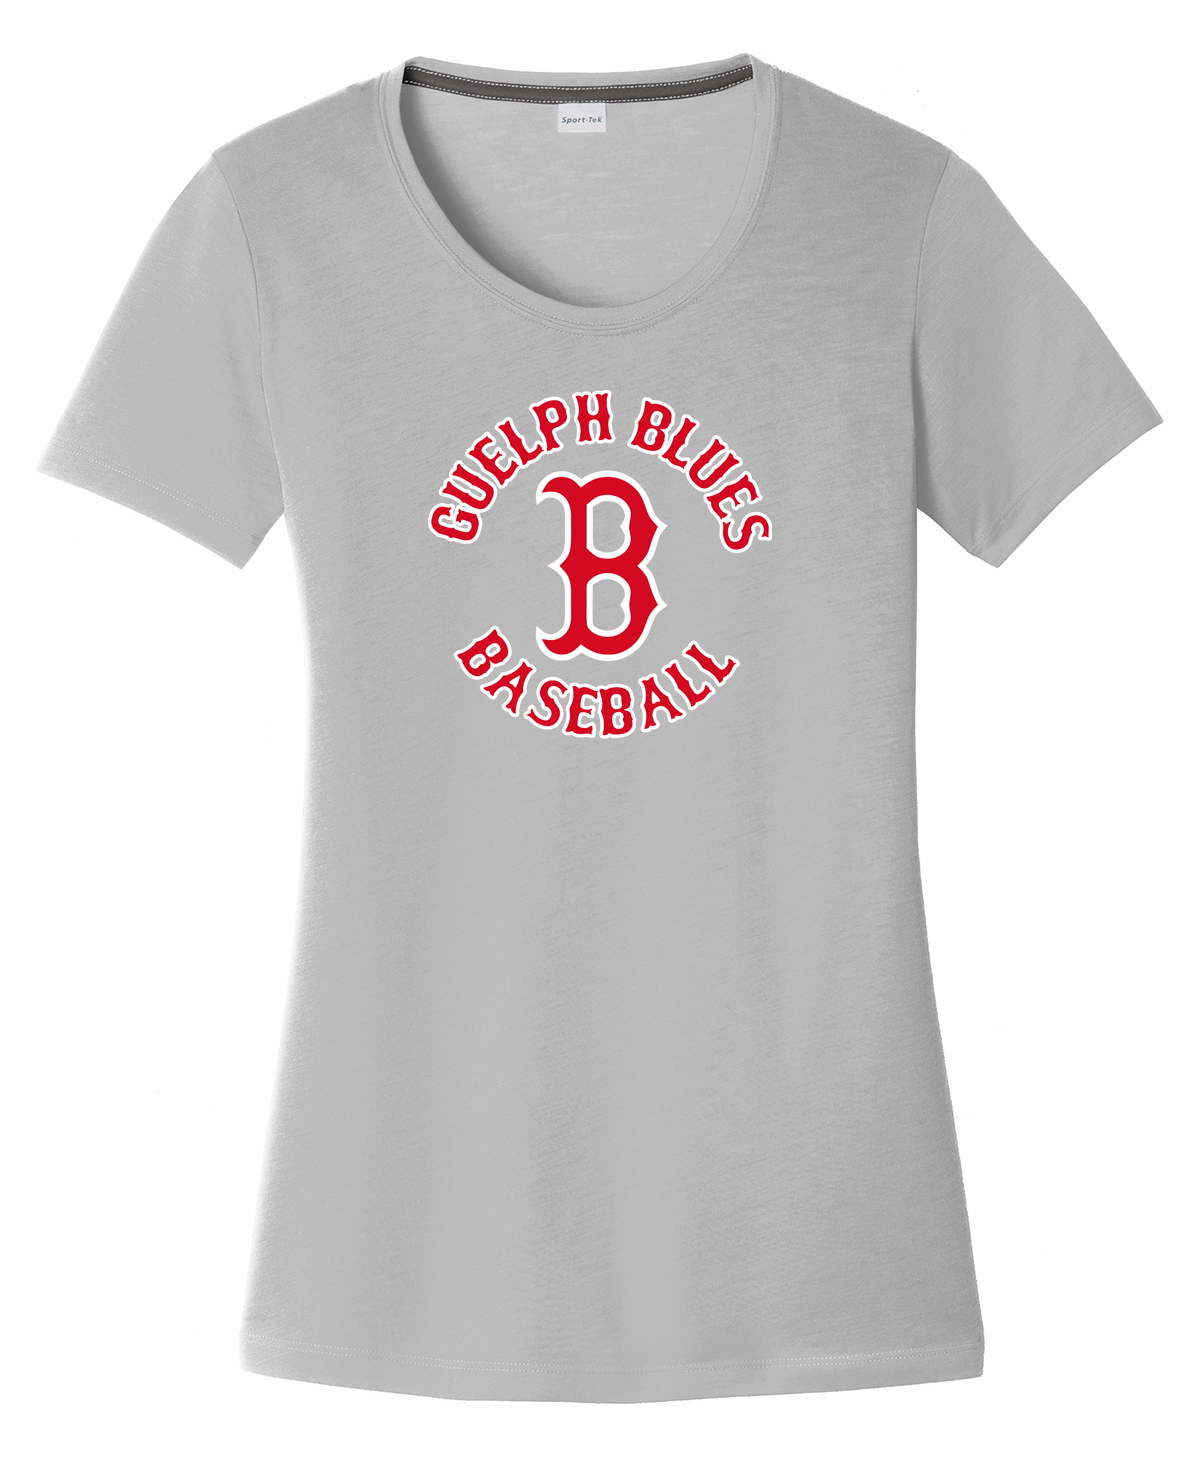 Guelph Blues Baseball Women's CottonTouch Performance T-Shirt